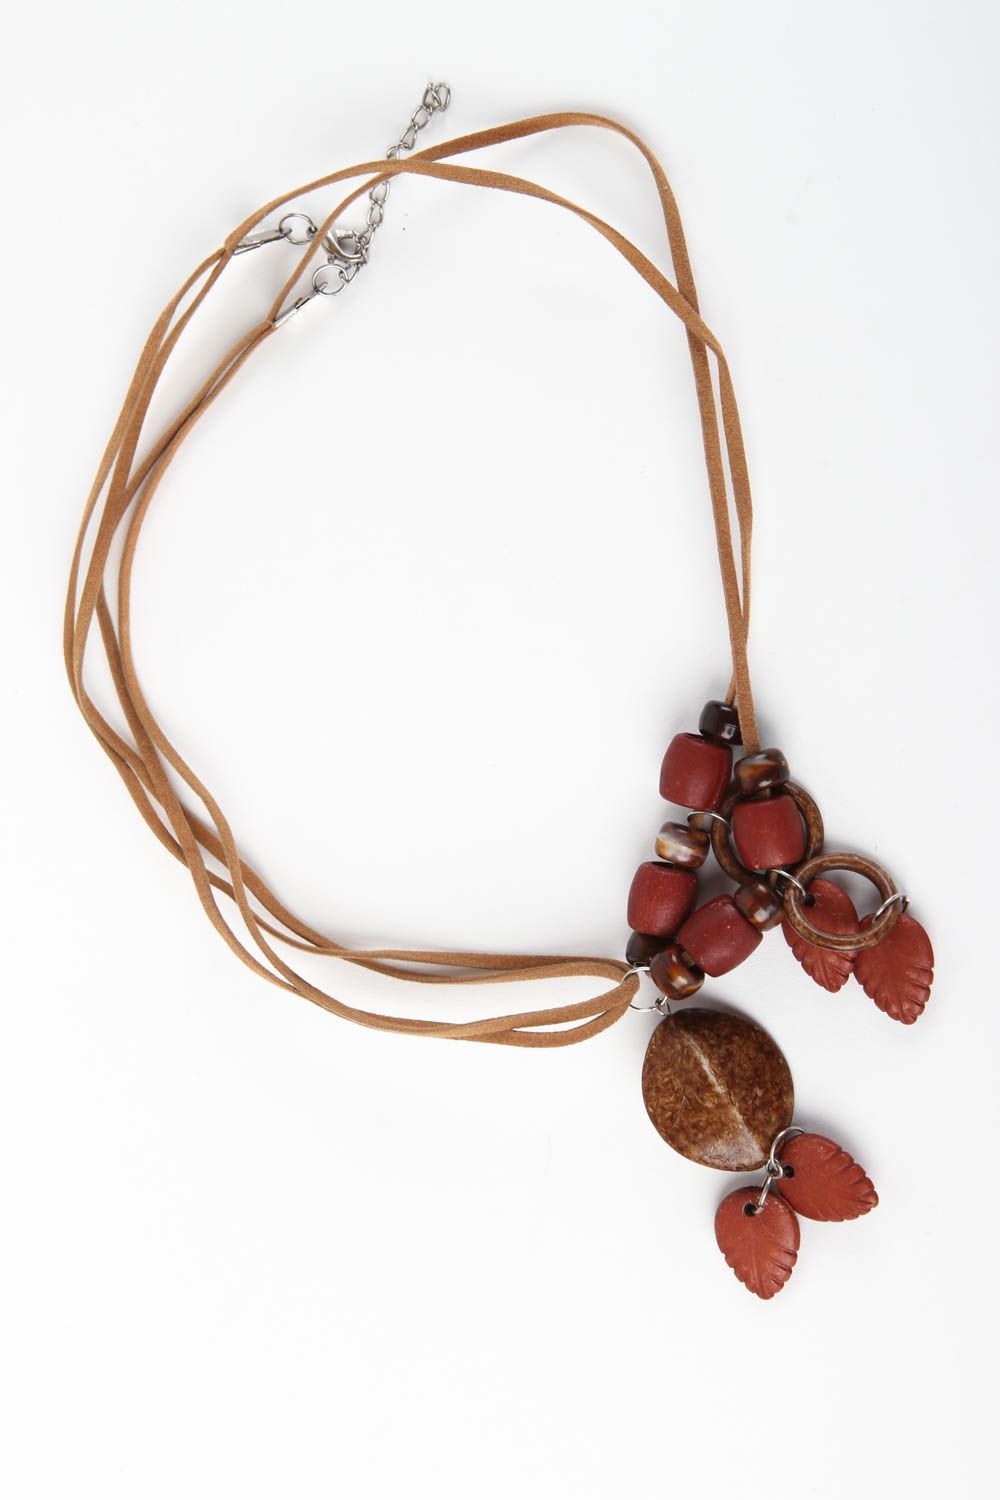 Collier für Frauen handgemacht Damen Halskette stilvoll Designer Schmuck foto 2